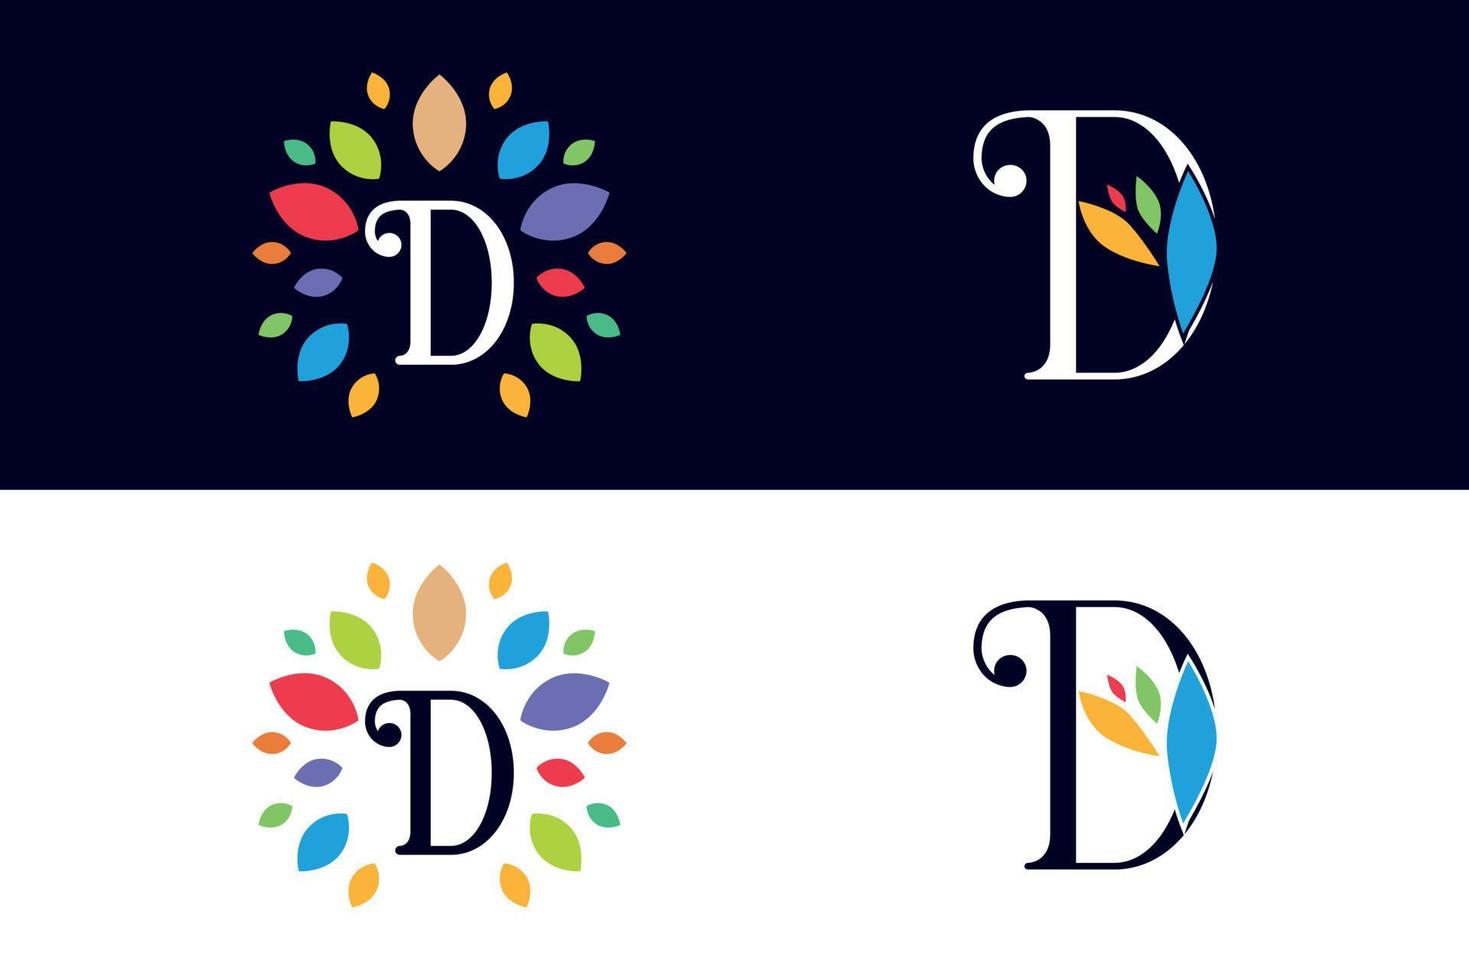 logo design letter D vector art